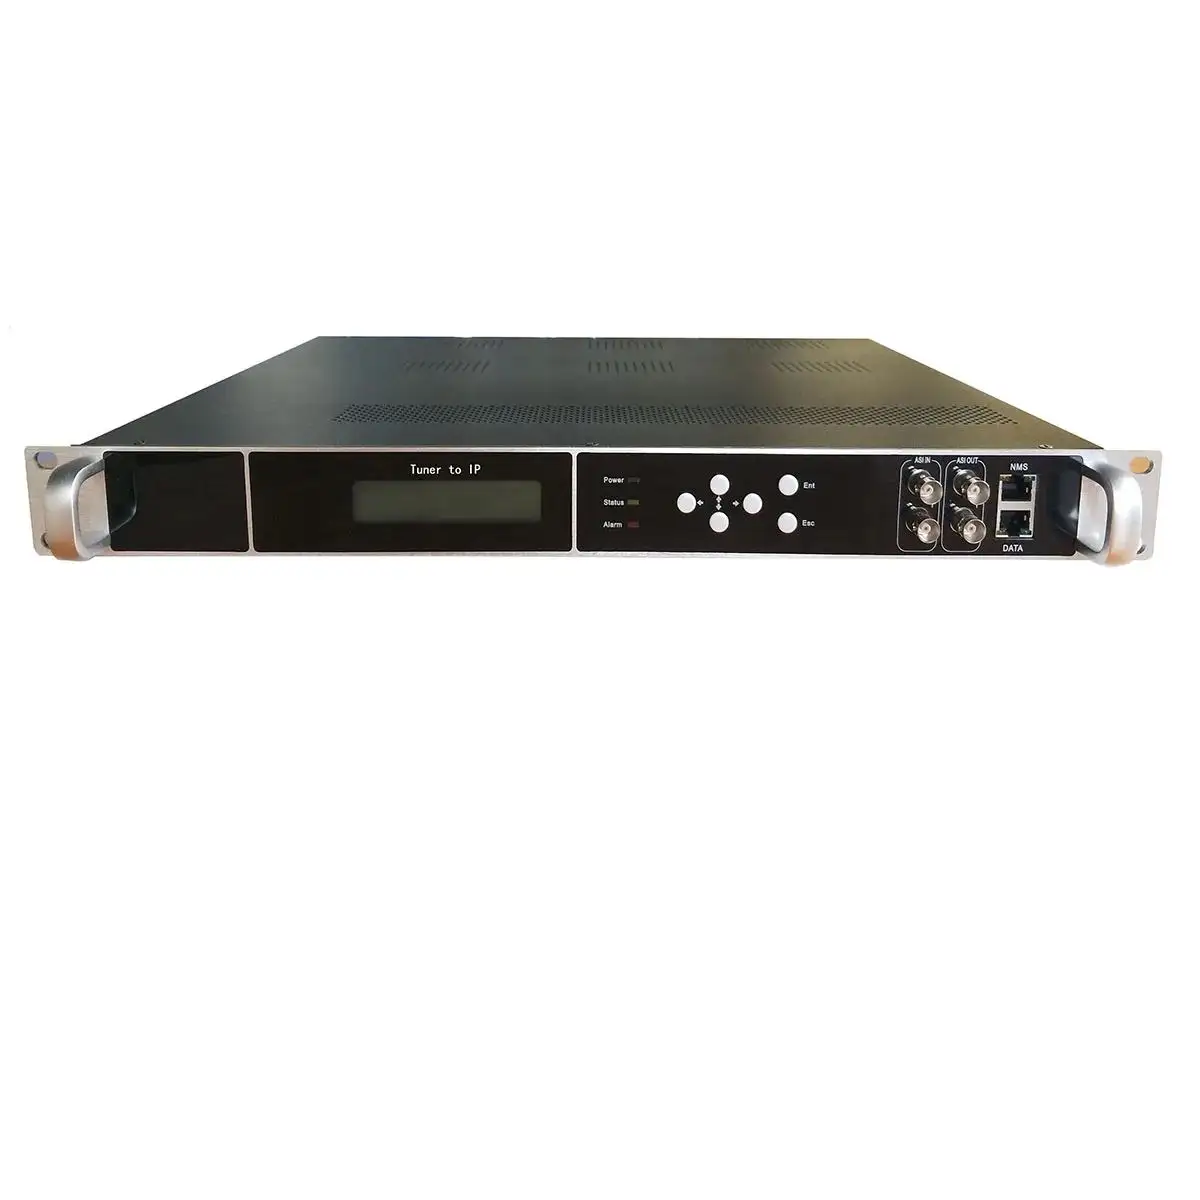 デジタルRFレシーバーからIPゲートウェイチューナーからASI DVB-S2 DVB-C DVB-T DVB-T2 ATSC ISDBT16チャンネルチューナー